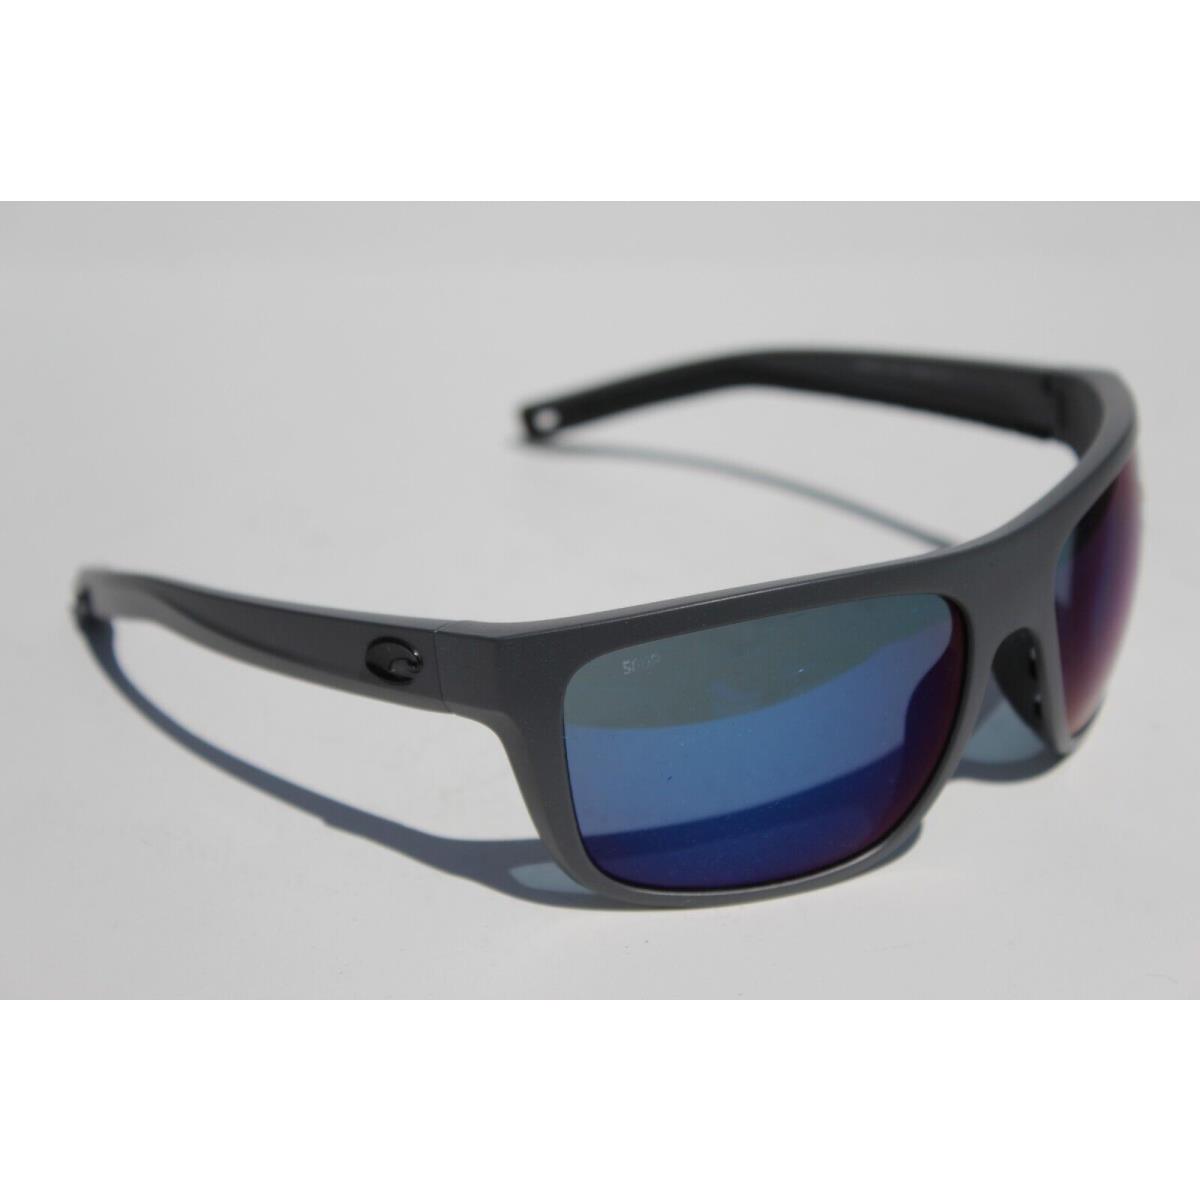 Costa Del Mar sunglasses Broadbill - Gray Frame, Blue Lens 3